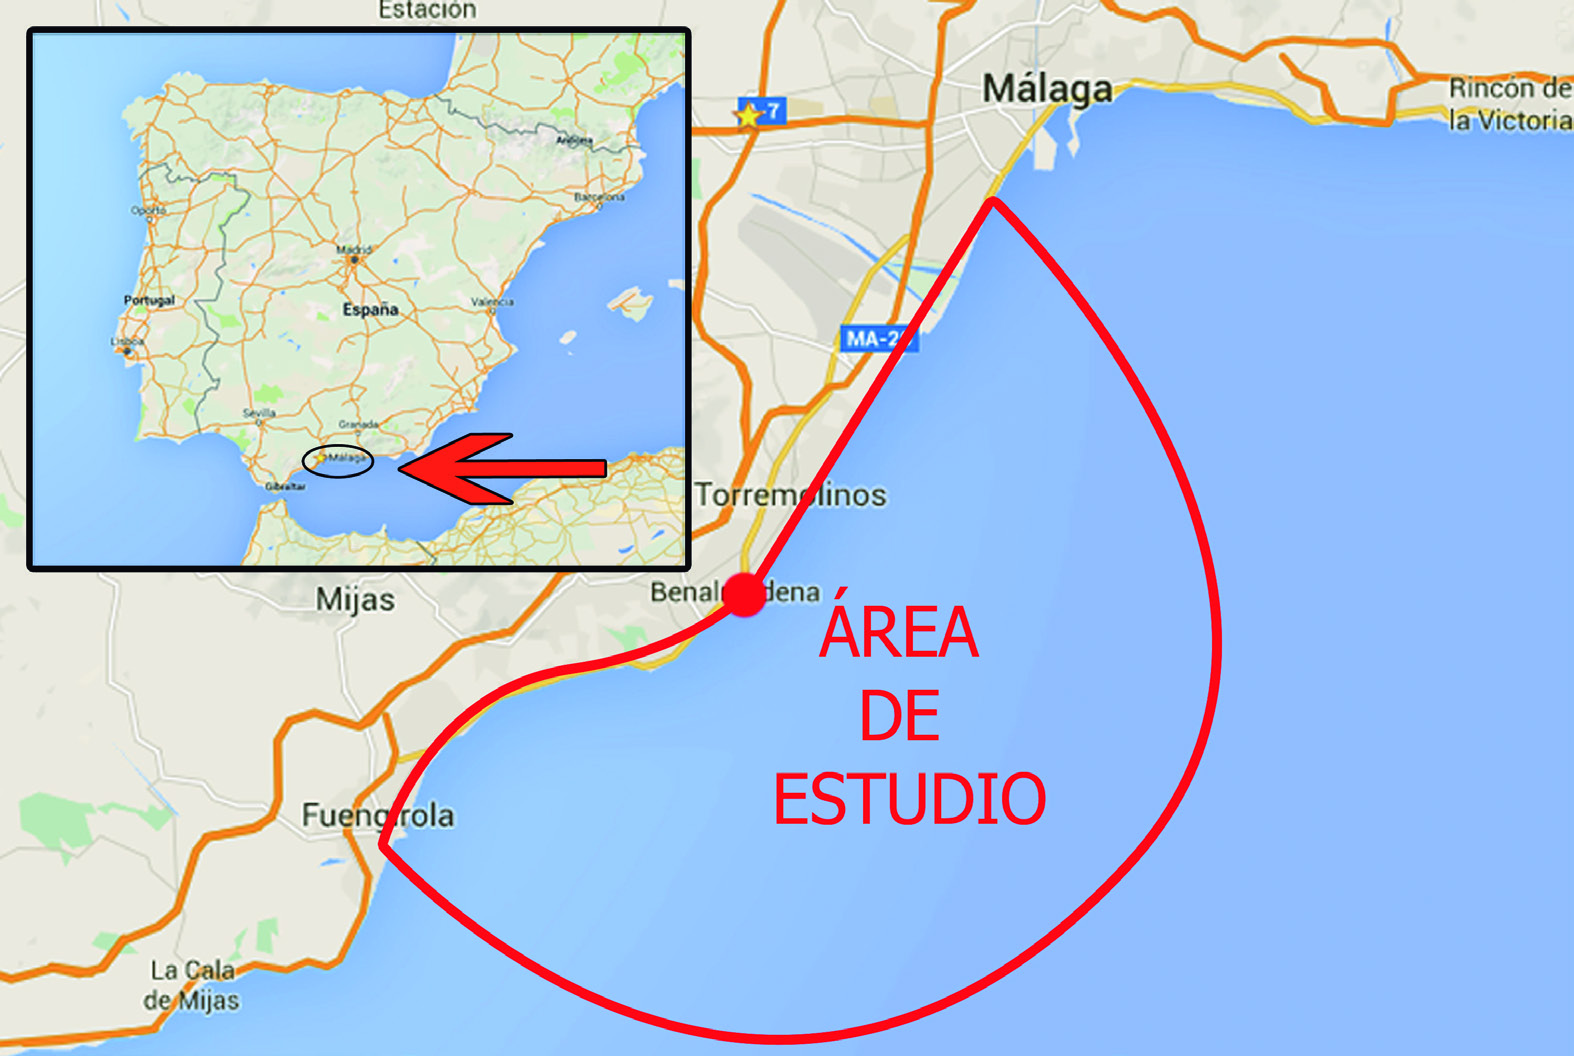 El total del área cubierta es de unos 300 Km, teniendo como punto de referencia Puerto Marina (Benalmádena), que es el centro de nuestra zona a estudiar (ver Imagen 1).